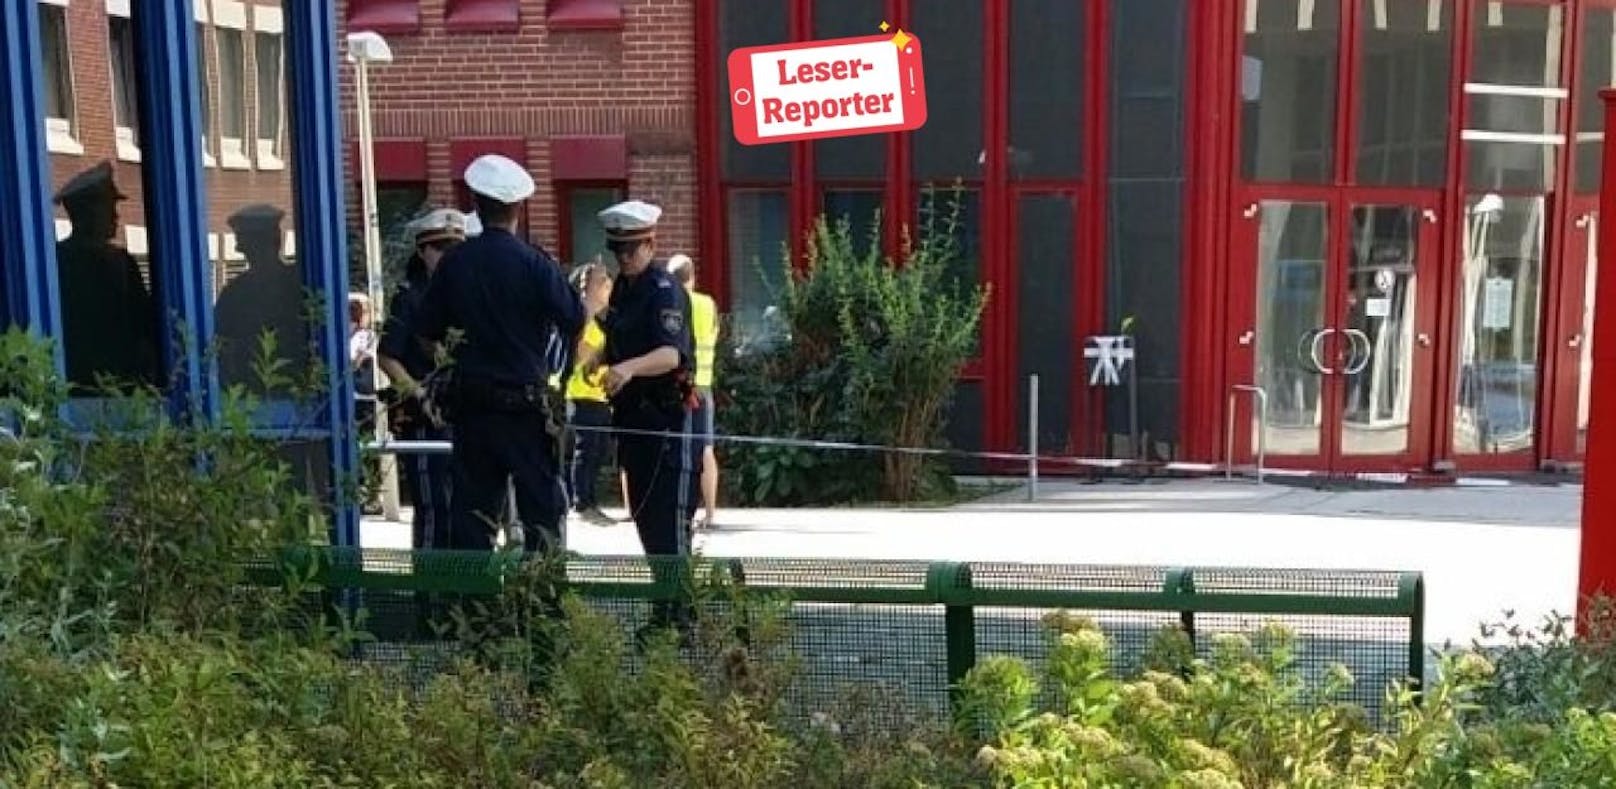 Wiener Gericht evakuiert: Es waren Kinderschuhe